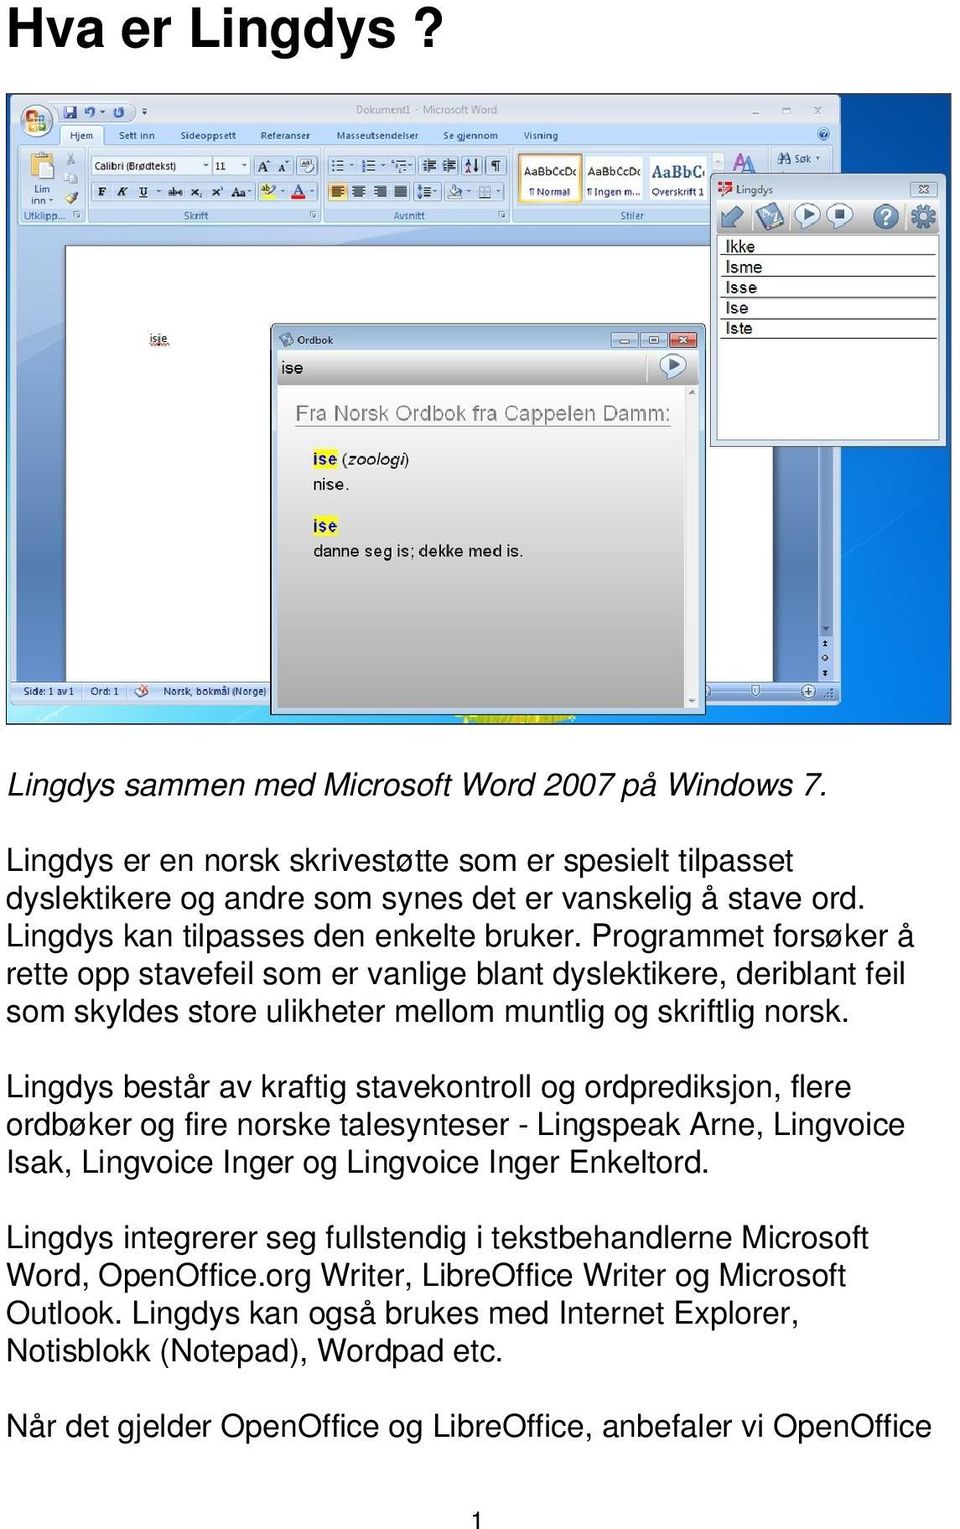 Lingdys består av kraftig stavekontroll og ordprediksjon, flere ordbøker og fire norske talesynteser - Lingspeak Arne, Lingvoice Isak, Lingvoice Inger og Lingvoice Inger Enkeltord.